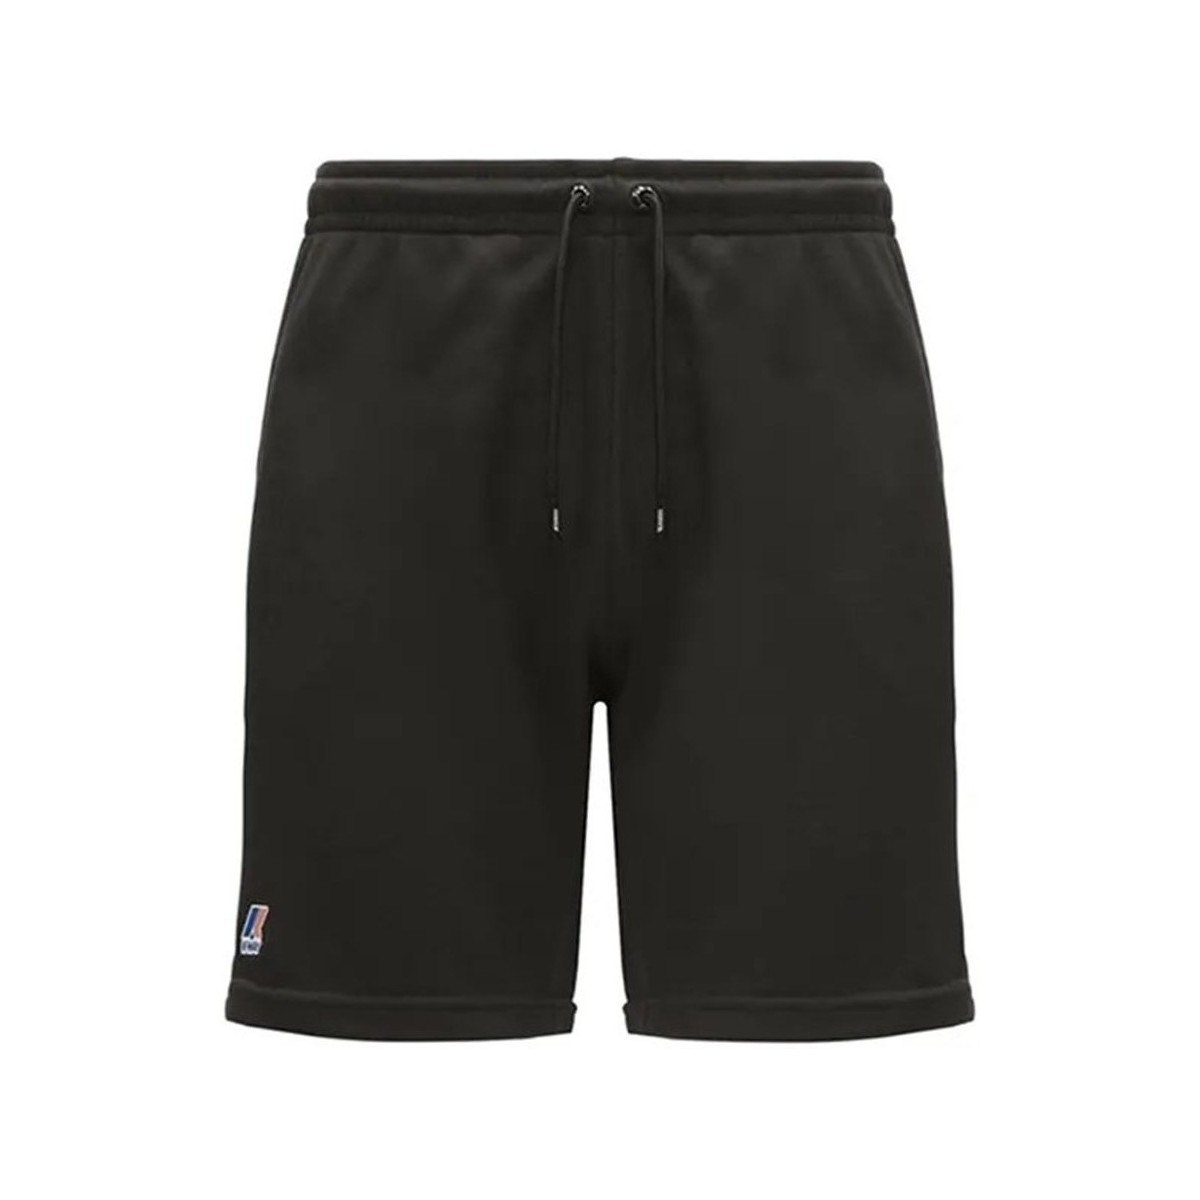 Abbigliamento Uomo Shorts / Bermuda K-Way K71213W Bermuda Uomo Nero Nero